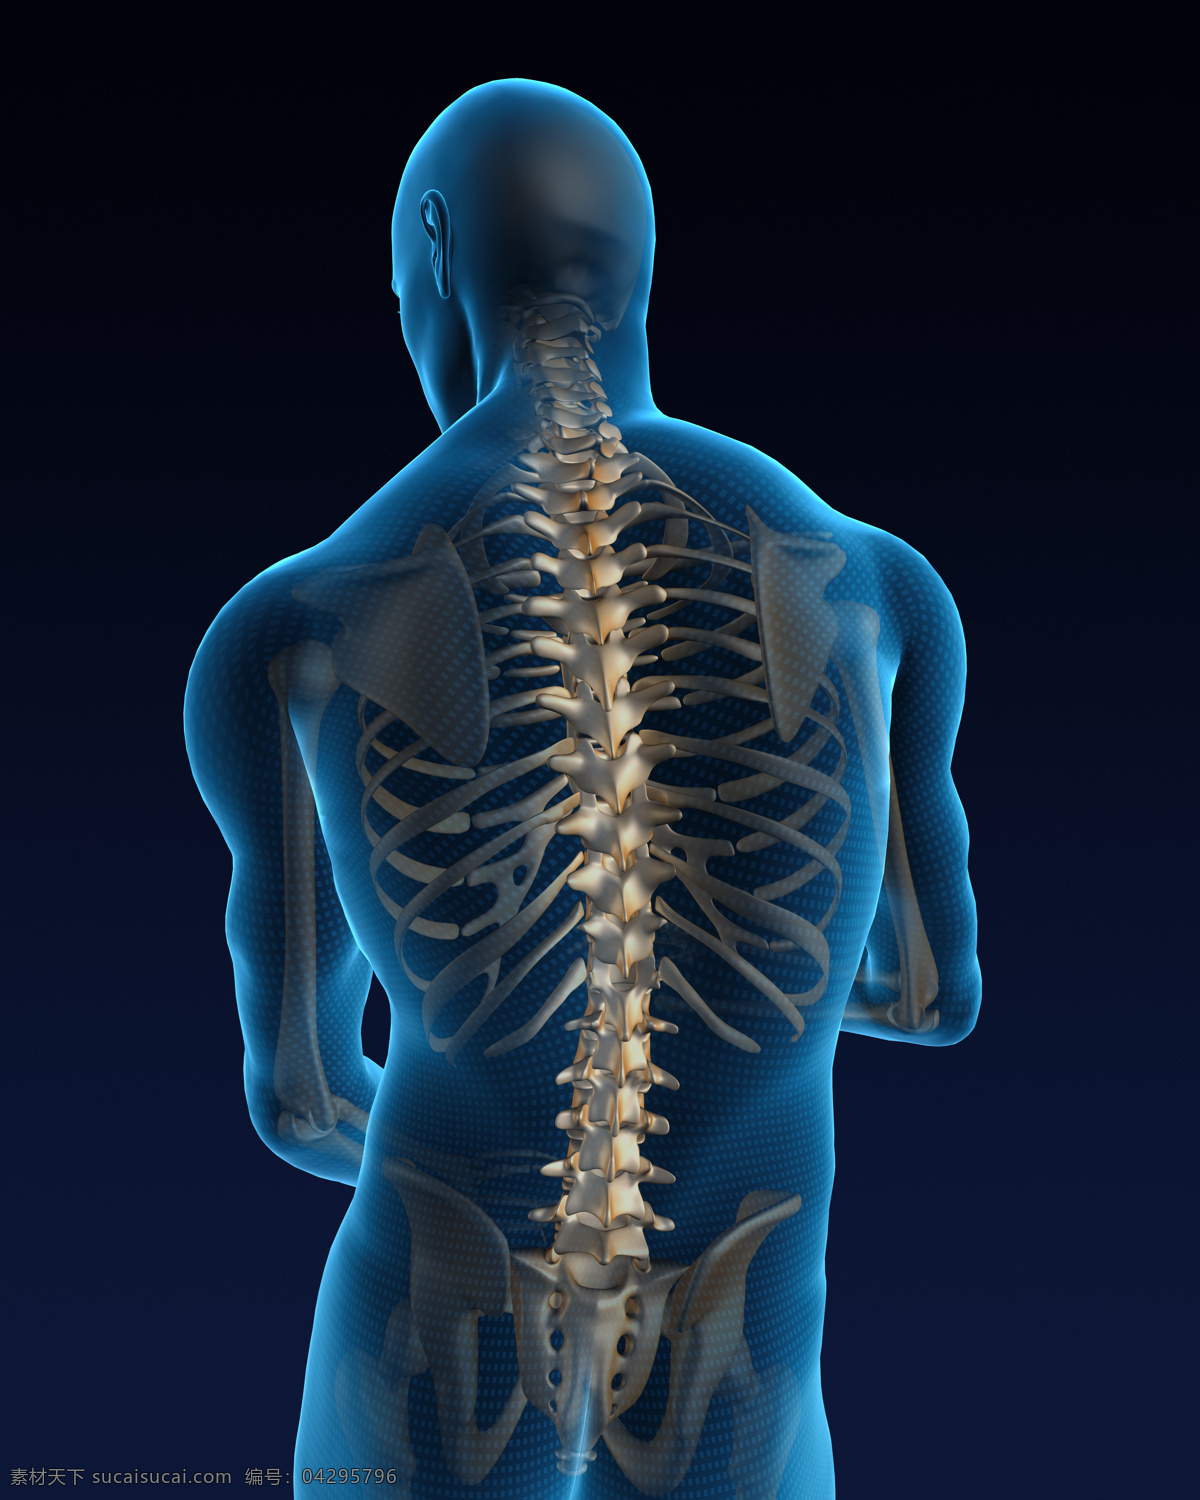 人体 骨骼 结构 人体器官 人体骨骼 骨骼结构 医学科技 医疗科技 人体结构 ct 人体器官图 人物图片